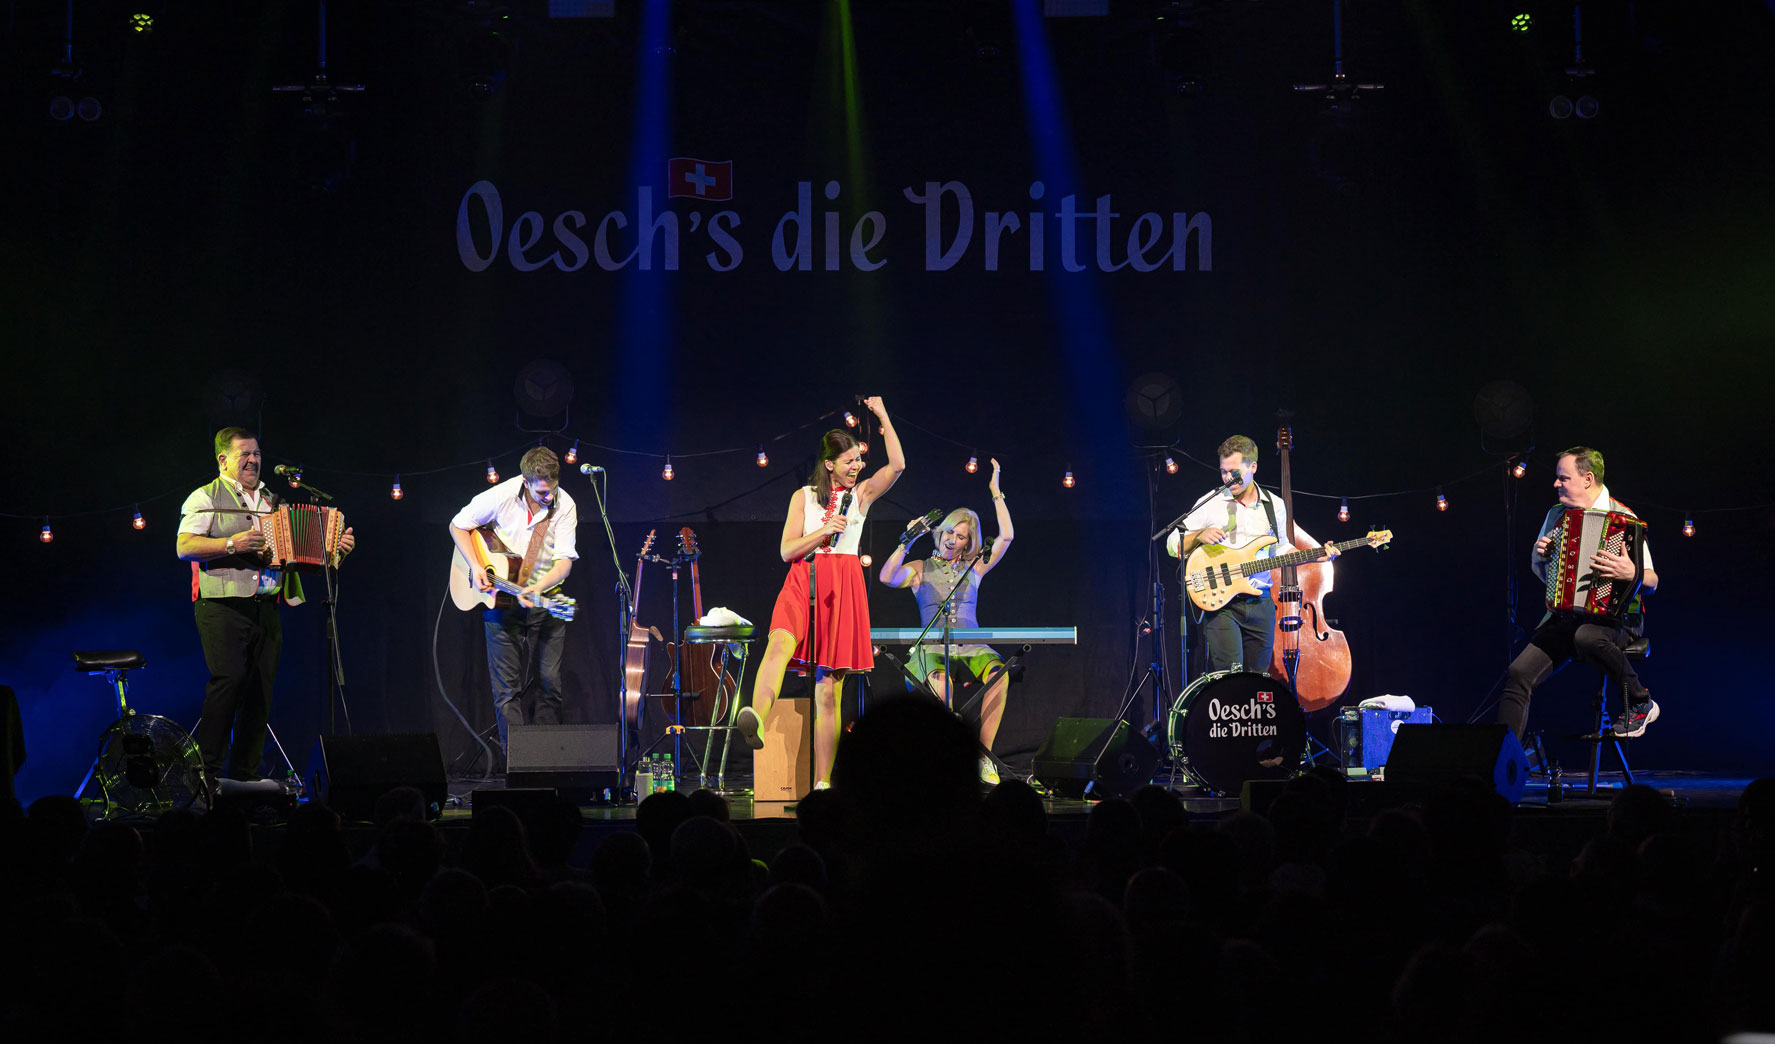 die Schweizer Volksmusikgruppe Oesch's die Dritten auf der Bühne